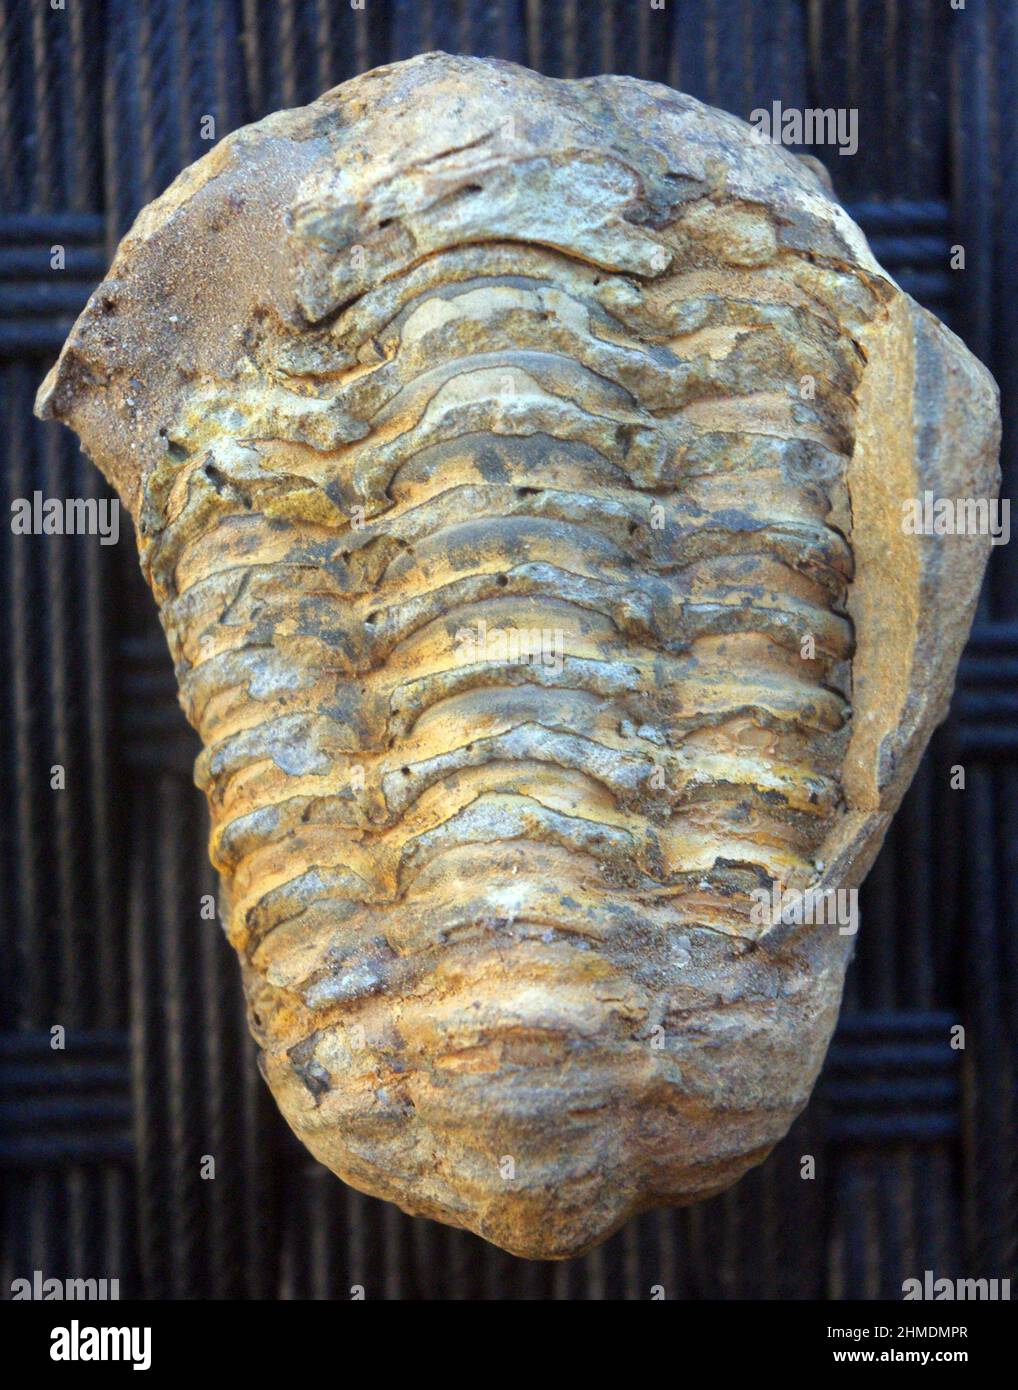 Der Abdruck des antiken Trilobiten, einer dreilappigen Meeresarthropode, die lange ausgestorben war (Paläozoische Ära) Stockfoto